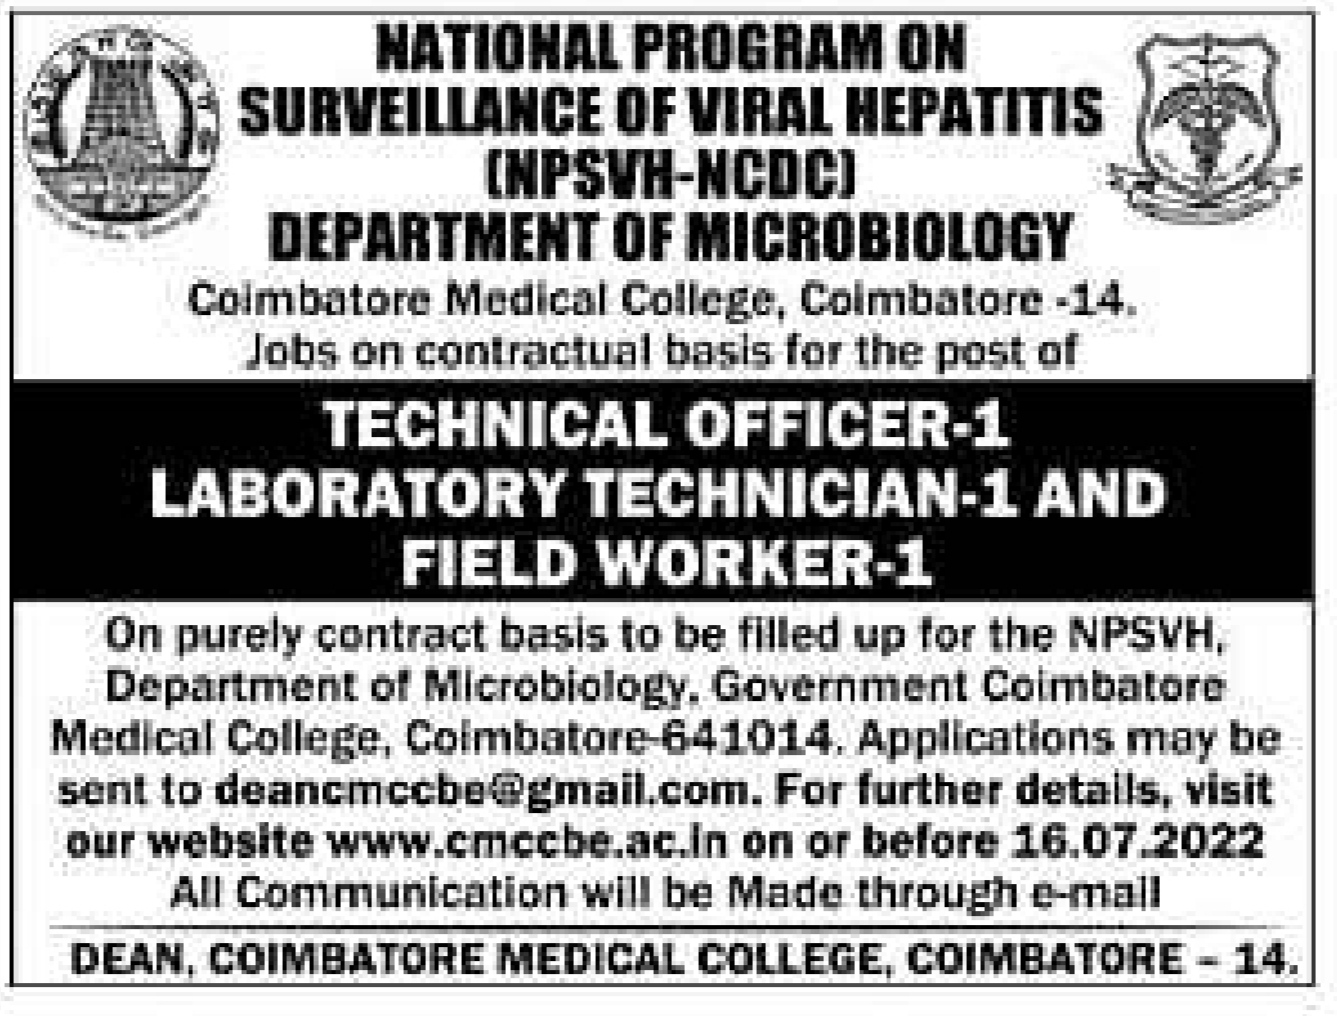 Coimbatore Medical College Recruitment 2022